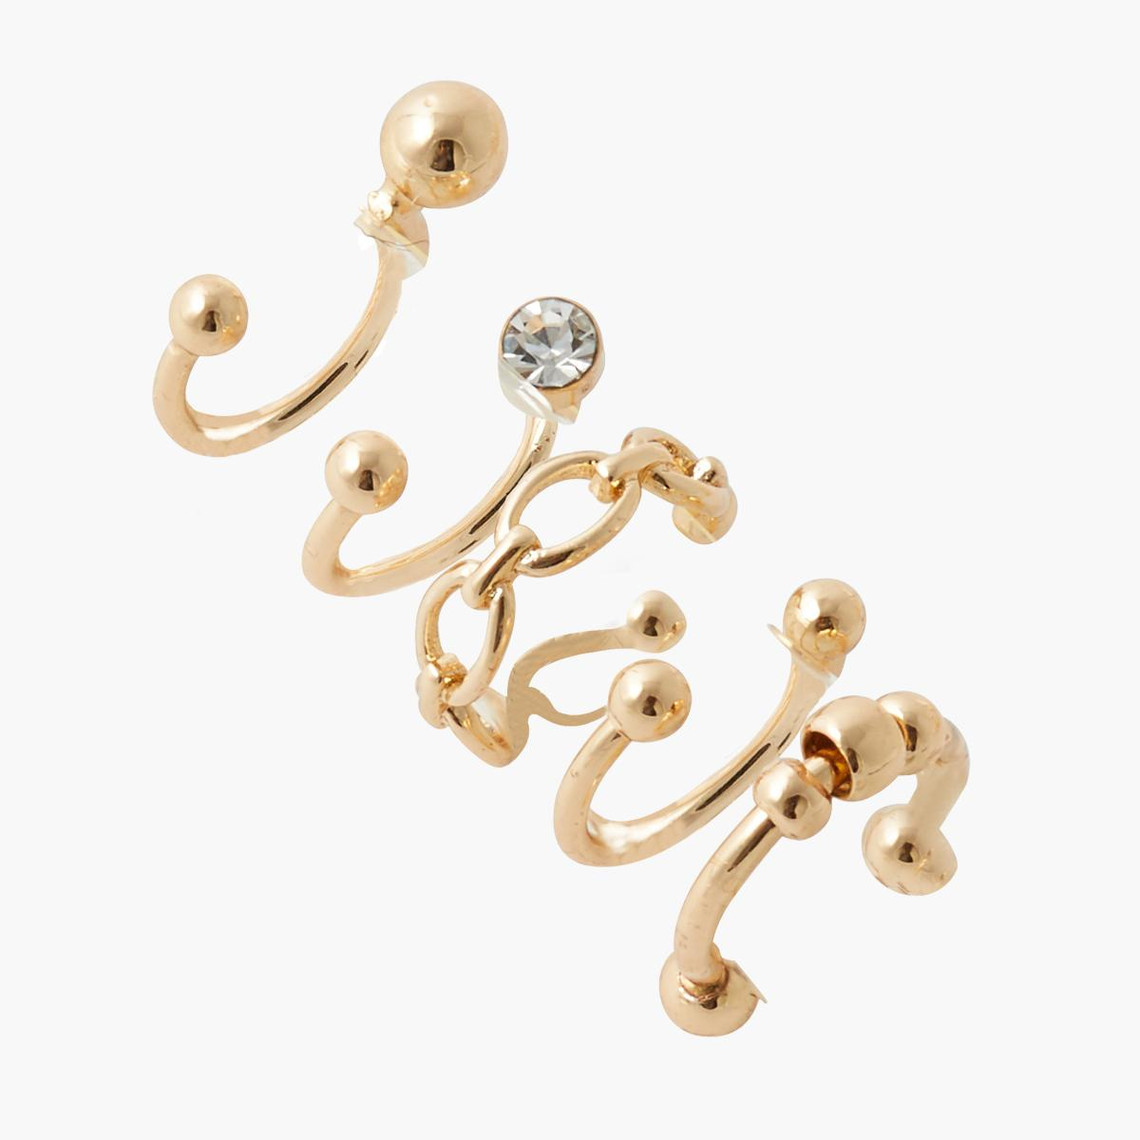 boucles d'oreilles femme balaboosté set de 5 bijoux d' oreilles - 3502456532922 métal doré